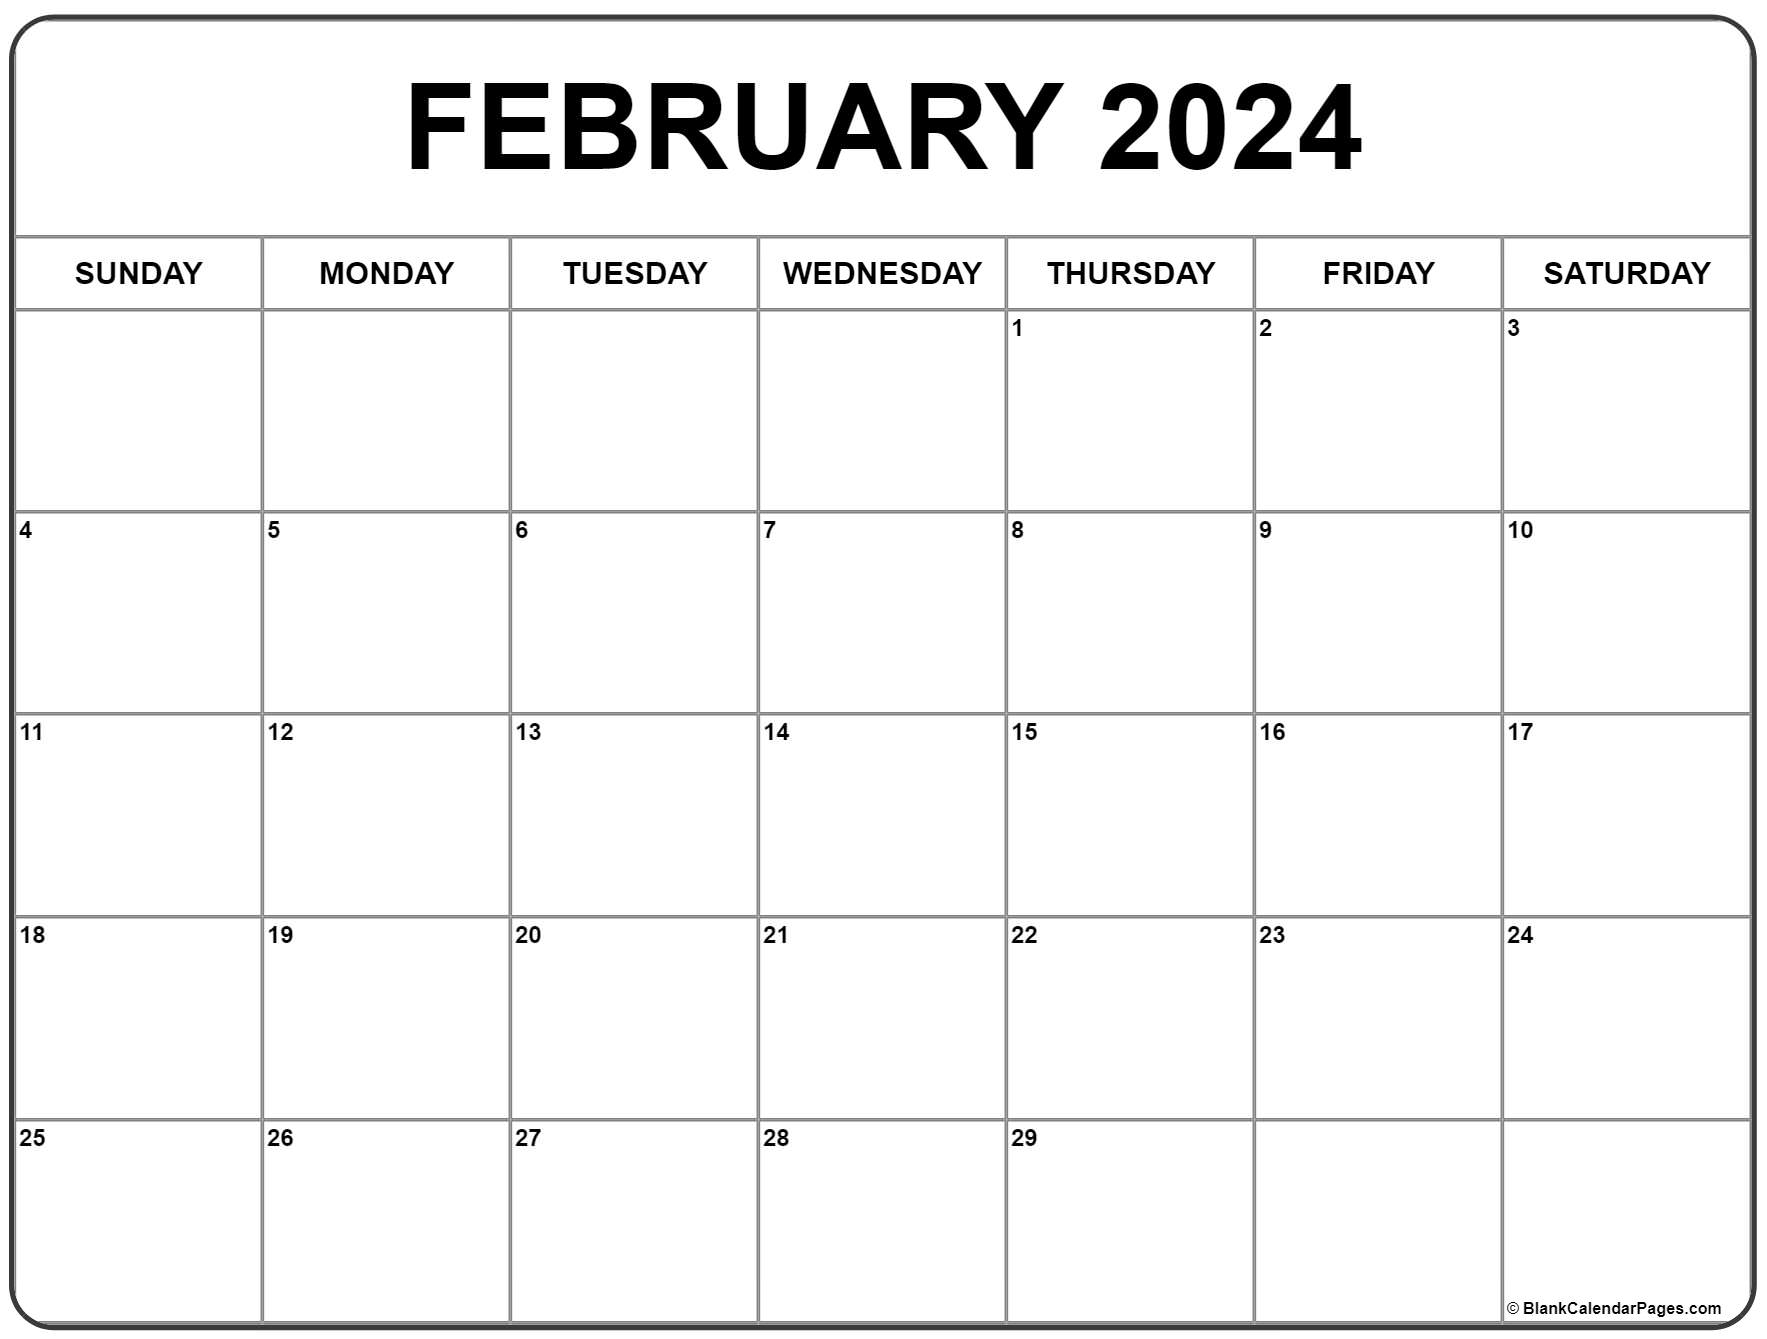 February 2024 Calendar | Free Printable Calendar for February Calendar 2024 Printable Free